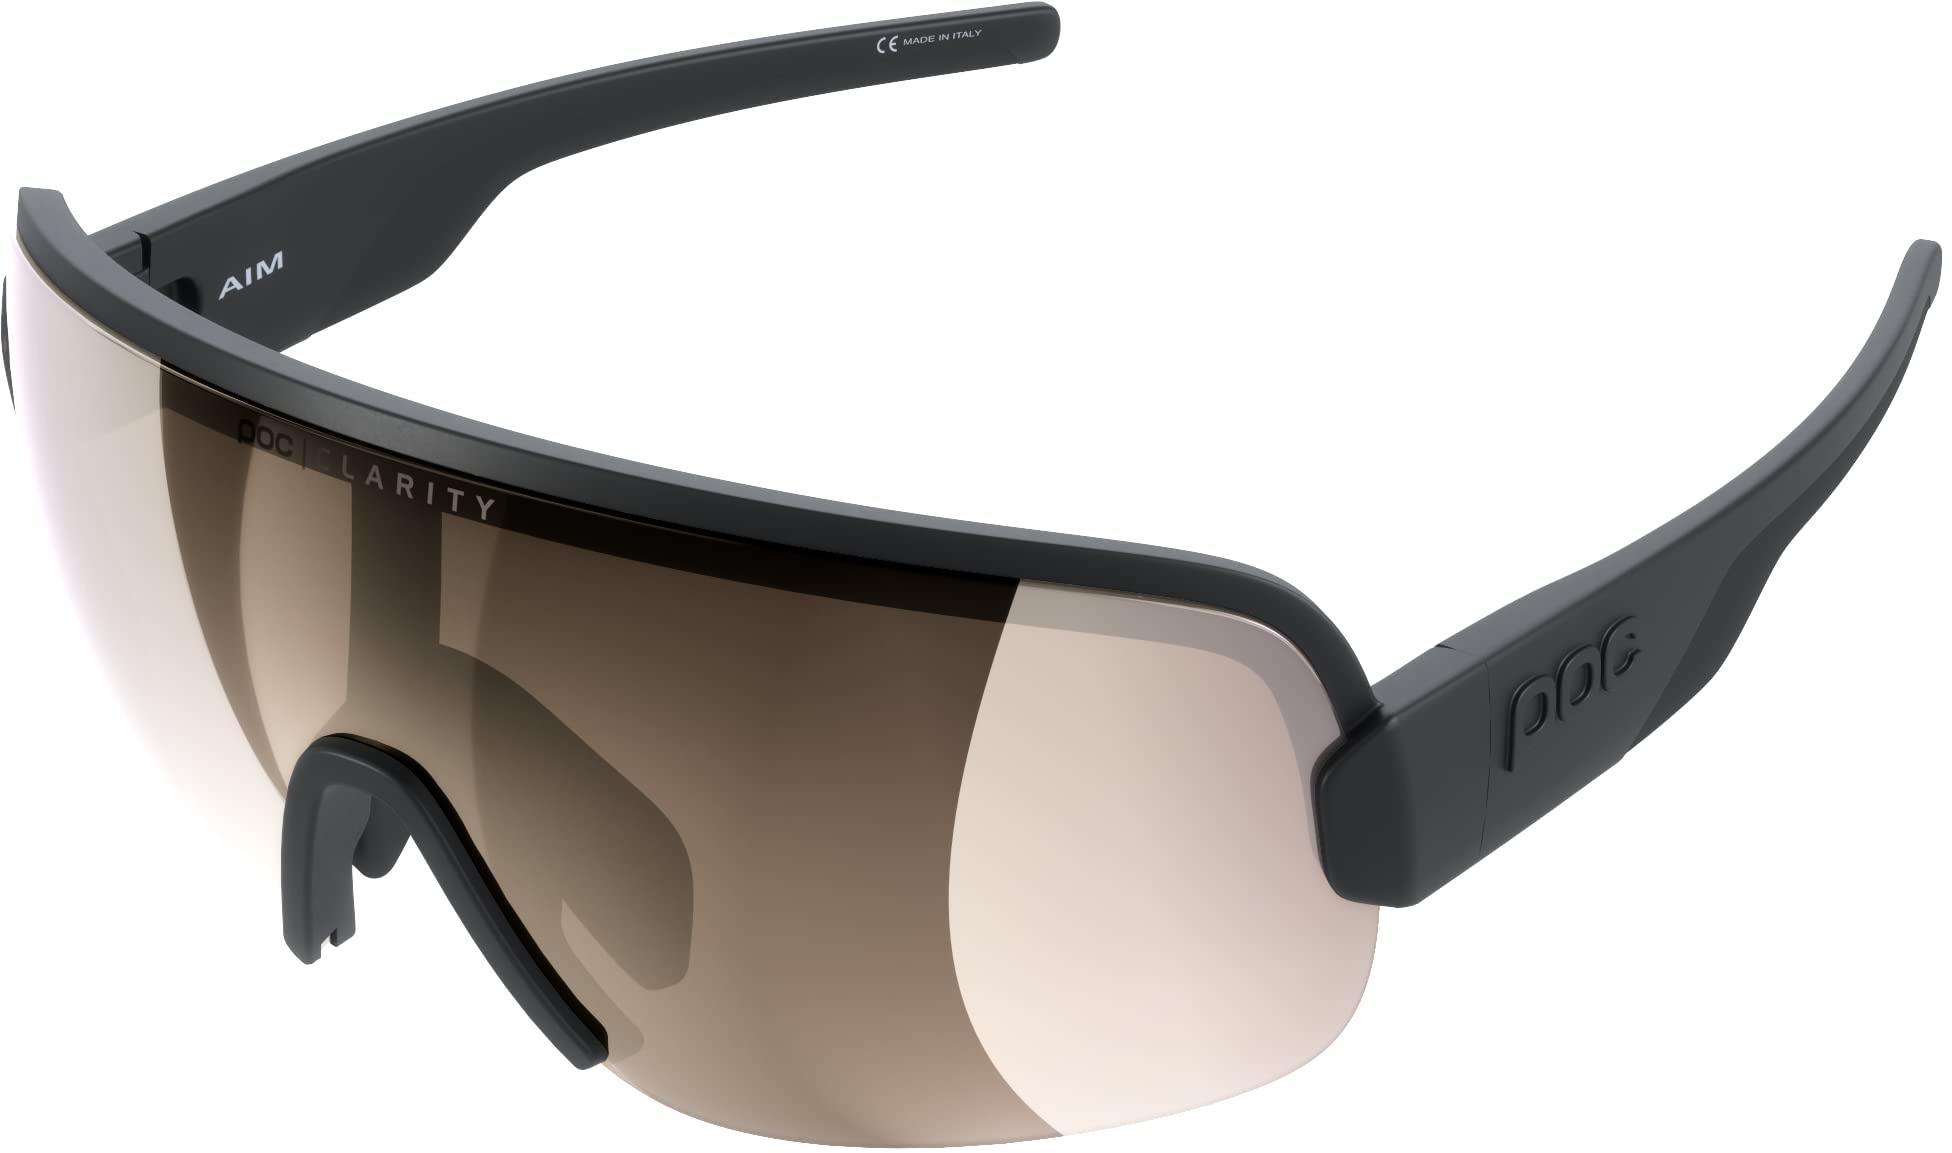 POC AIM Sonnenbrille - Sportbrille mit extra großen Brillenglas für maximales Sichtfeld für Straßen und Off-Road-Touren, Uranium Black